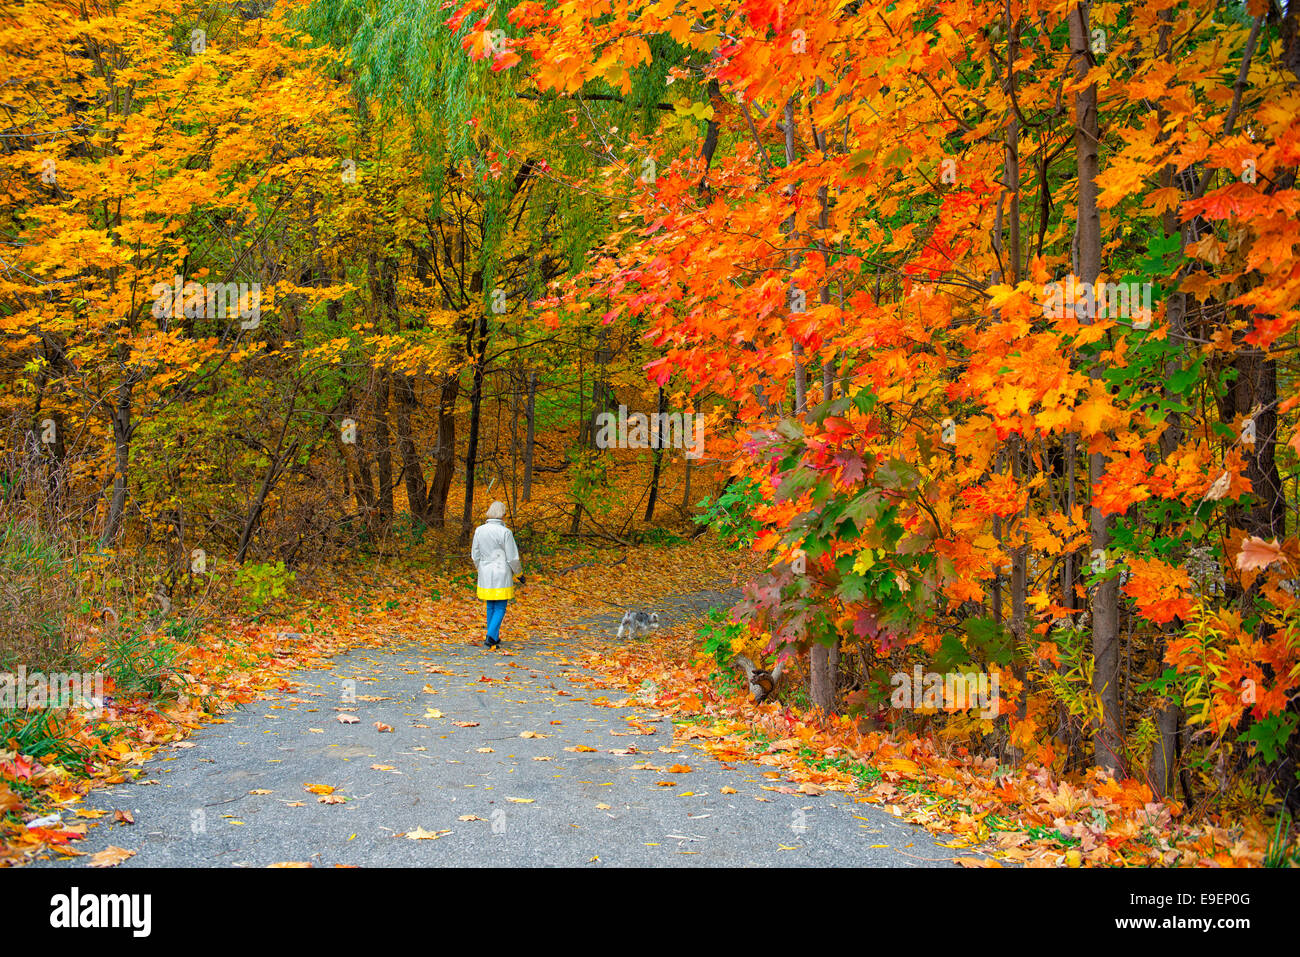 Couleurs d'Automne Couleurs d'automne et les feuilles des arbres, Woman Walking Dog in Park Banque D'Images